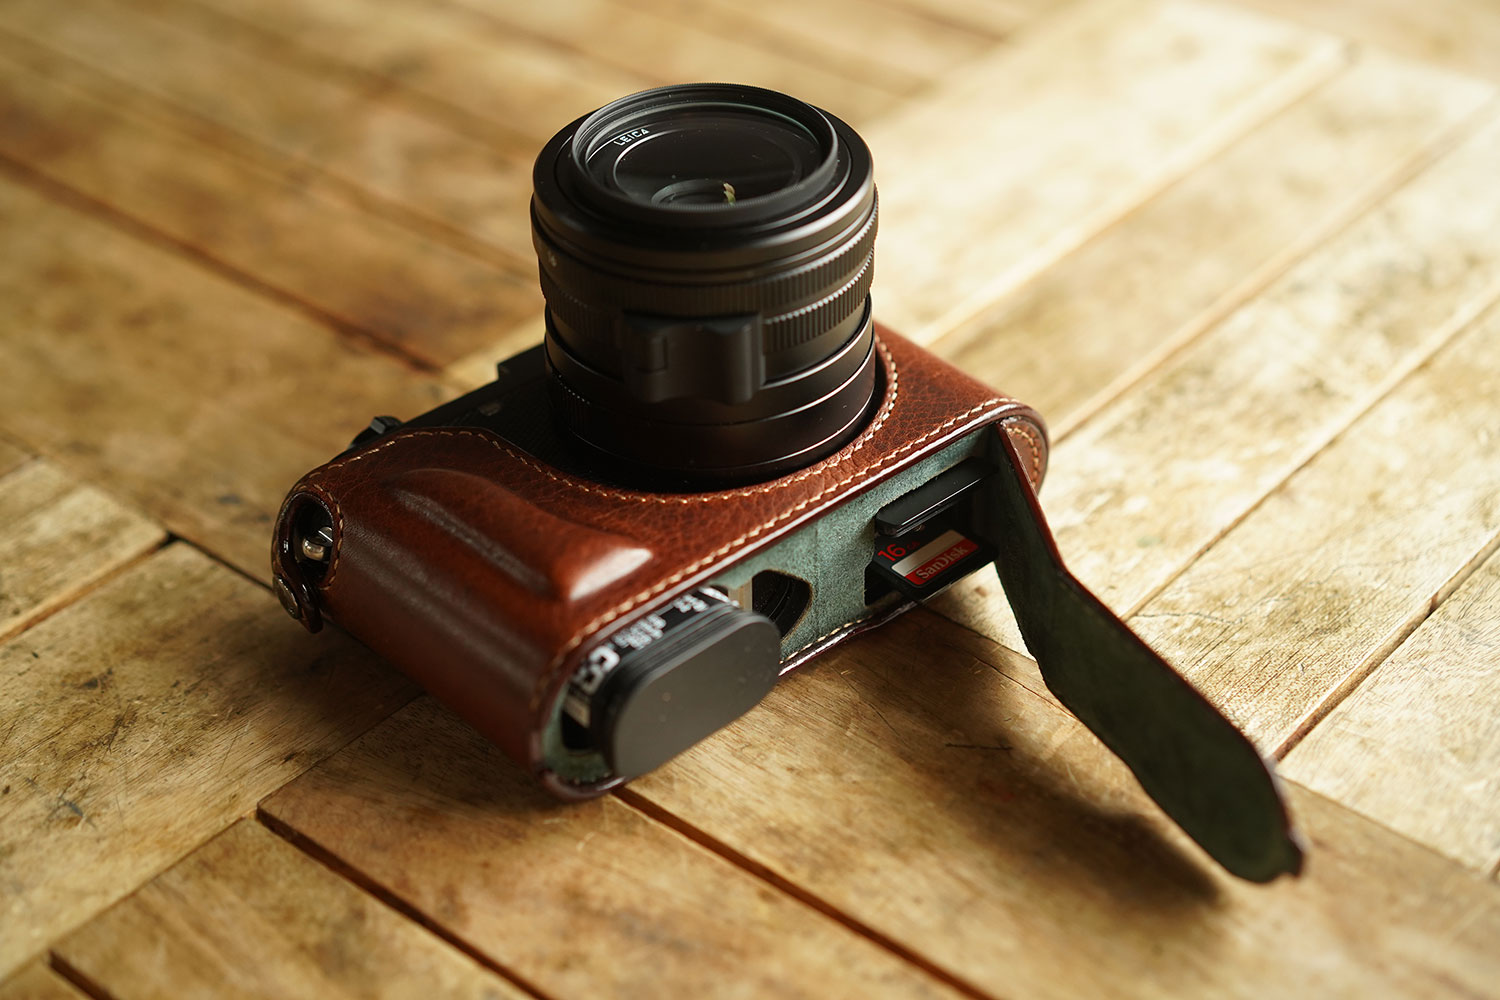  Camera Case for Leica Q3, BMAOLLONGB Handmade Genuine